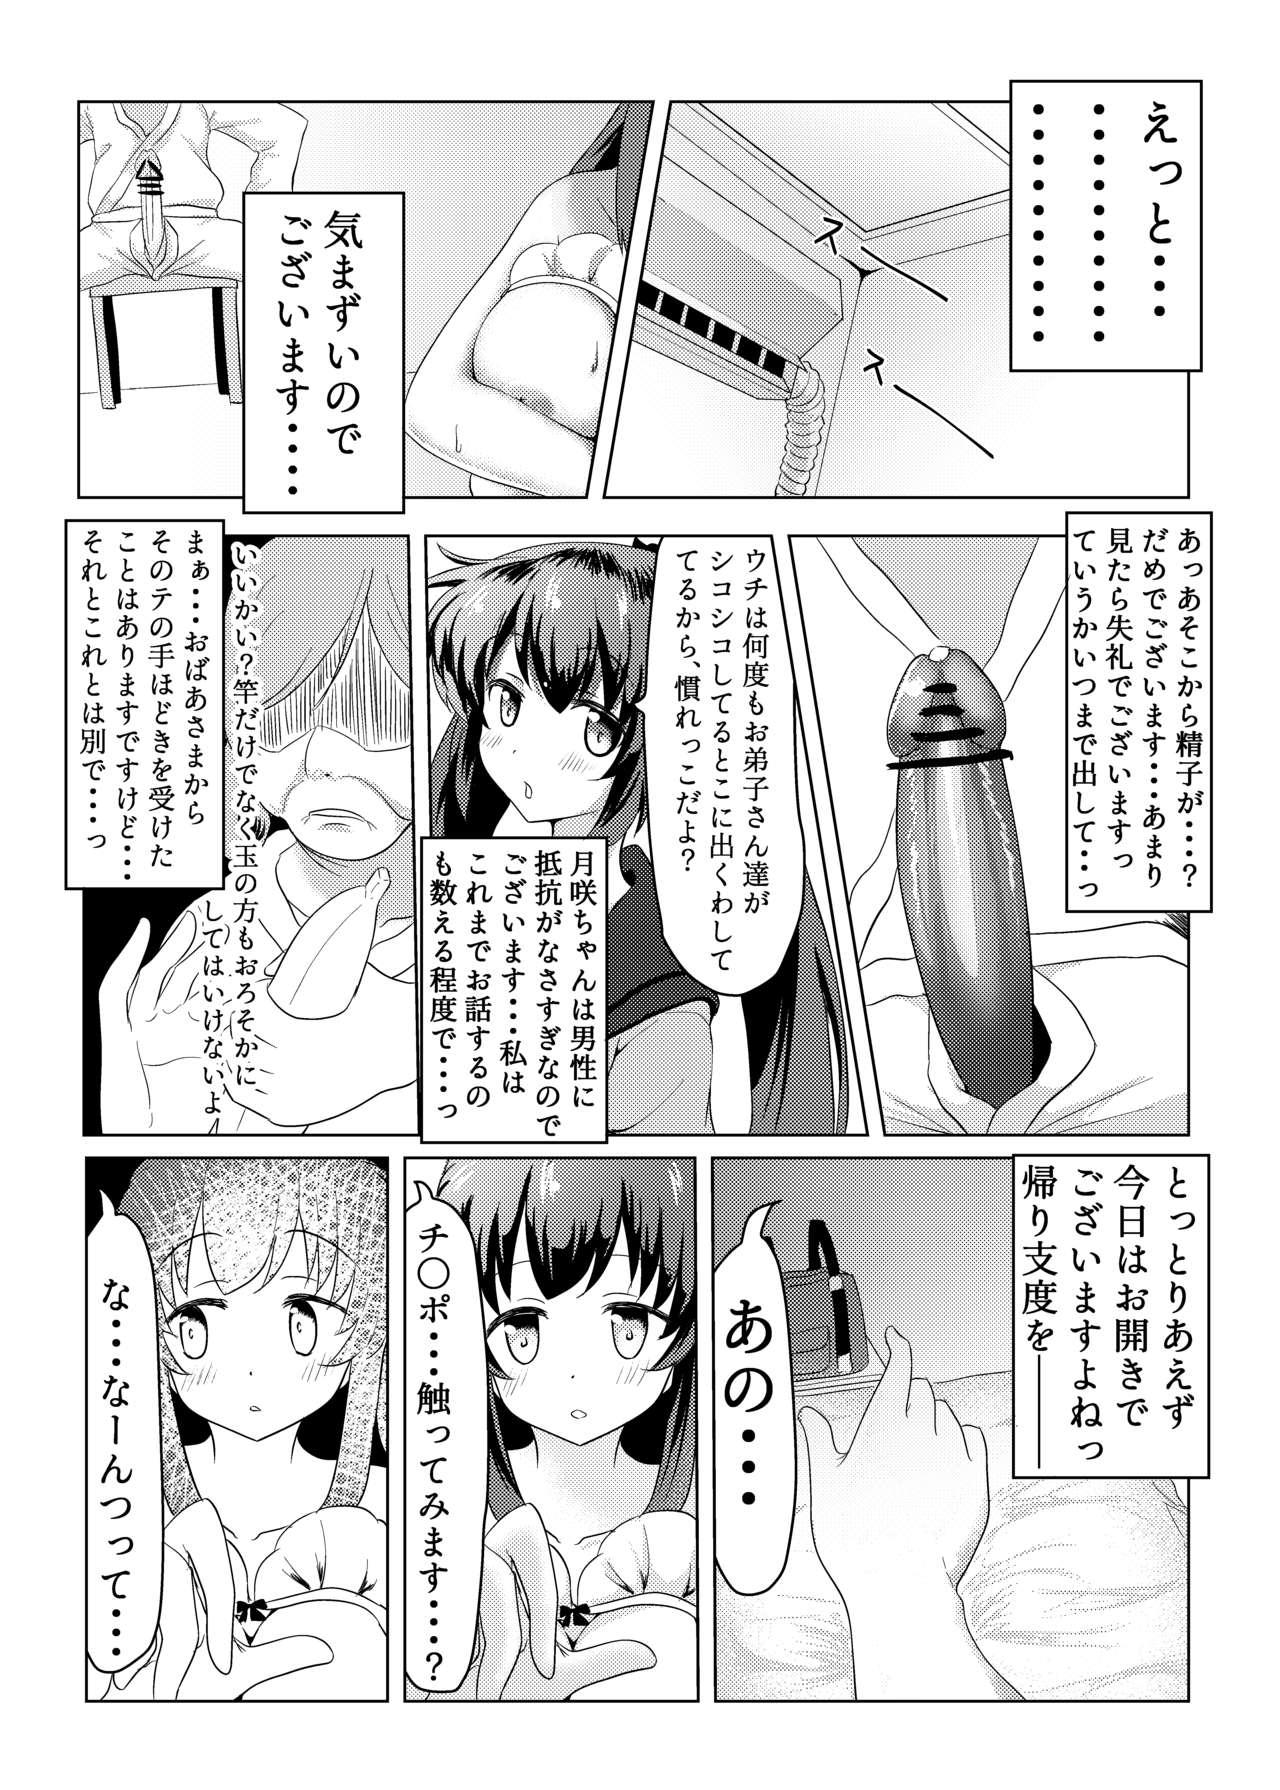 Gay Shop Tsukuyo ga Waruinodegozaimasu - Puella magi madoka magica side story magia record Mother fuck - Page 8